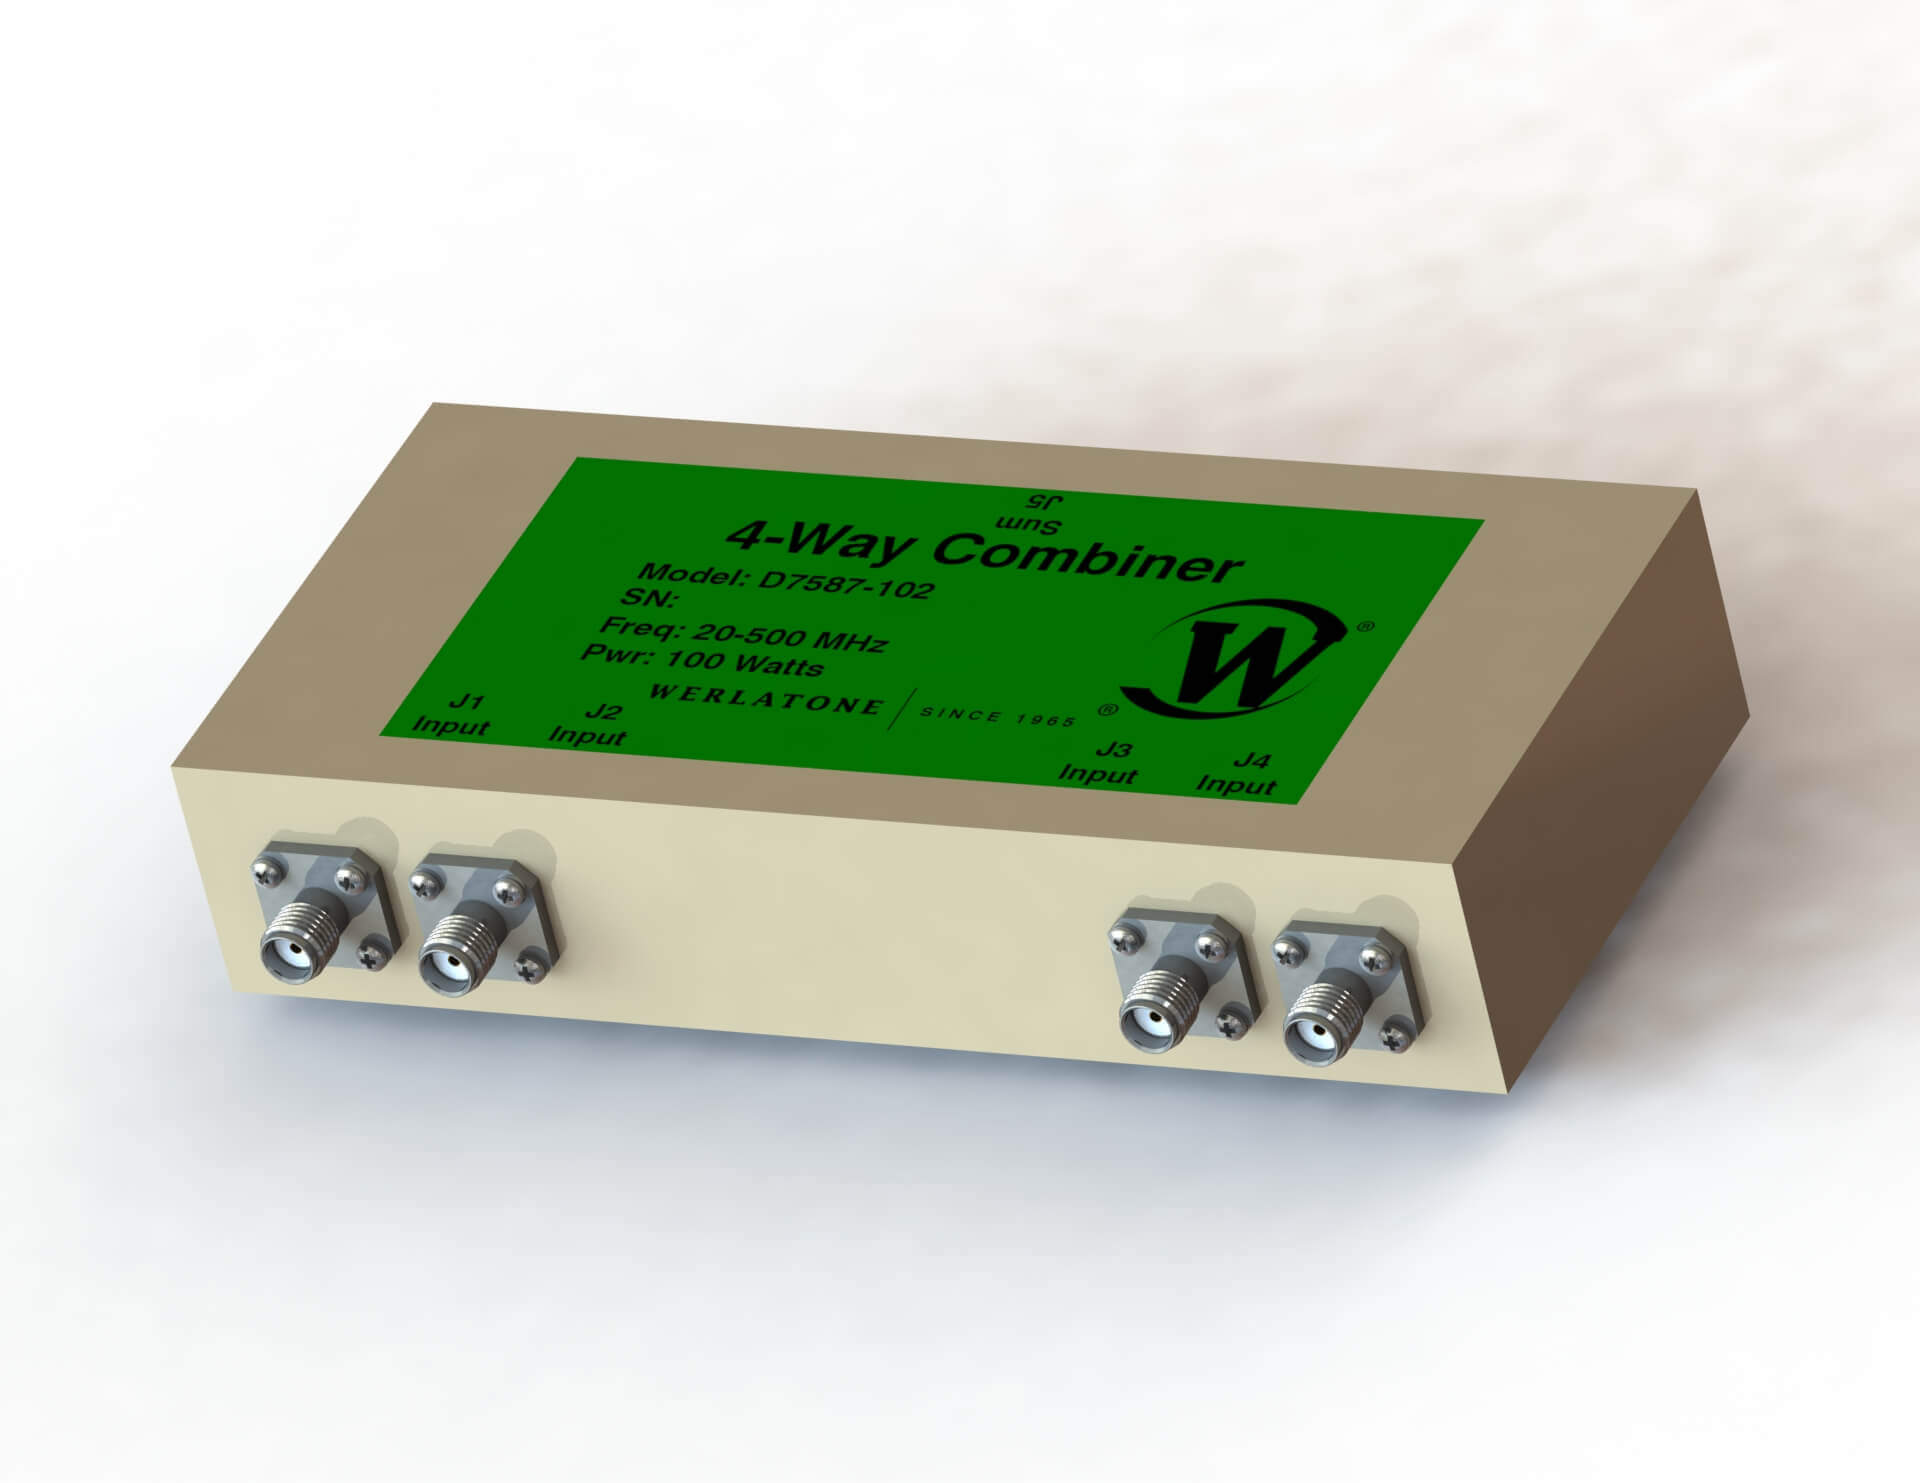 5-20MHz Werlatone 1000W RF Combiner / Splitter D10210-632 4-way Shortwave HF 